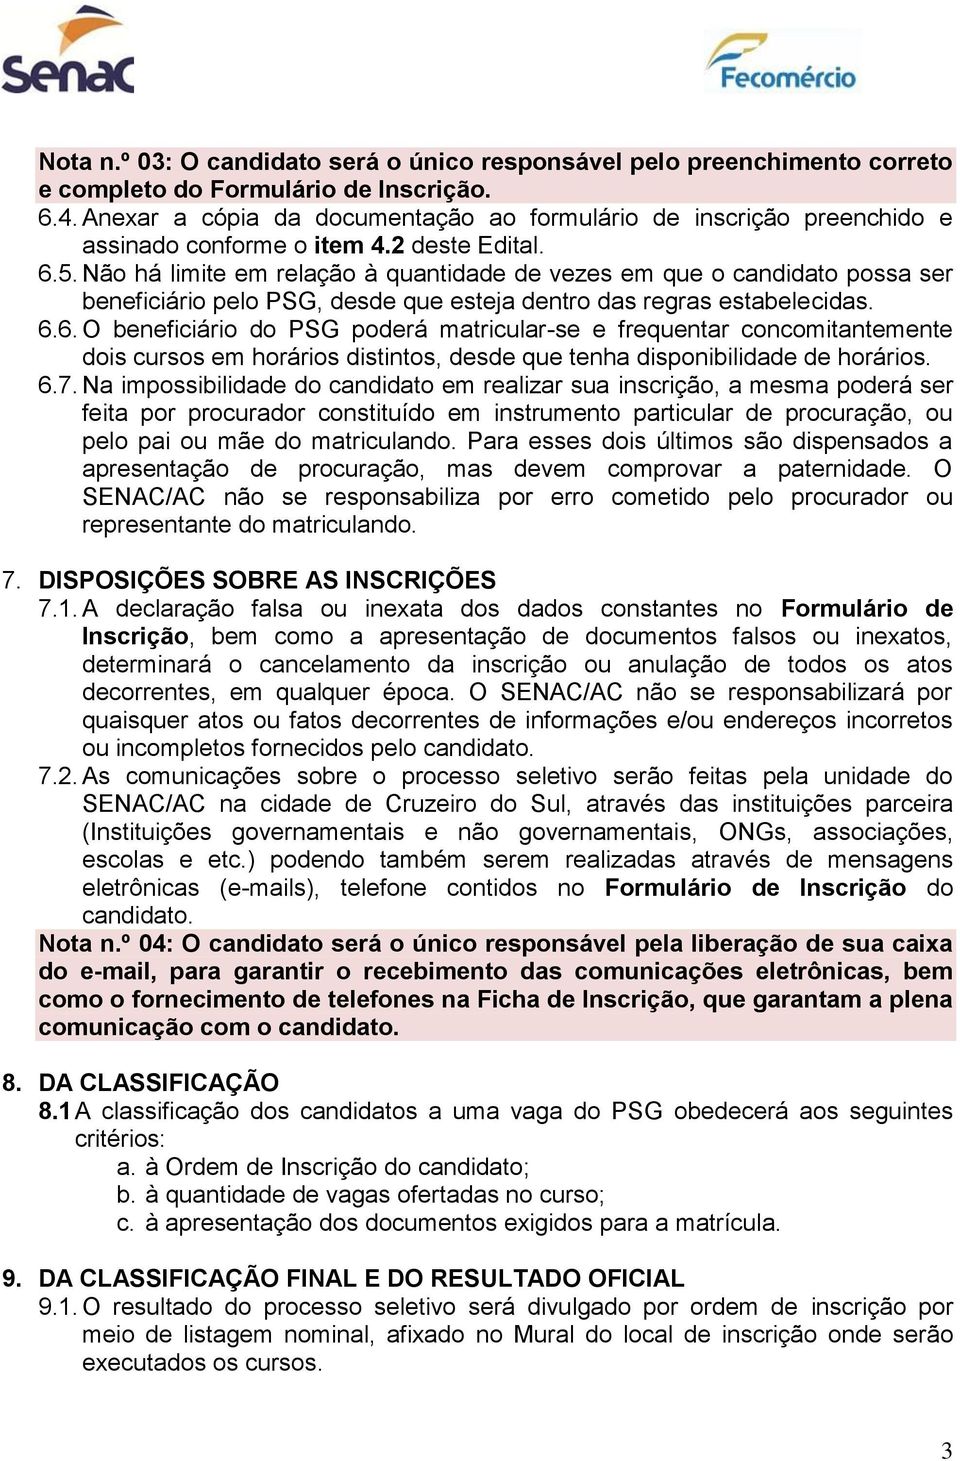 Não há limite em relção à quntidde de vezes em que o cndidto poss ser beneficiário pelo PSG, desde que estej dentro ds regrs estbelecids. 6.